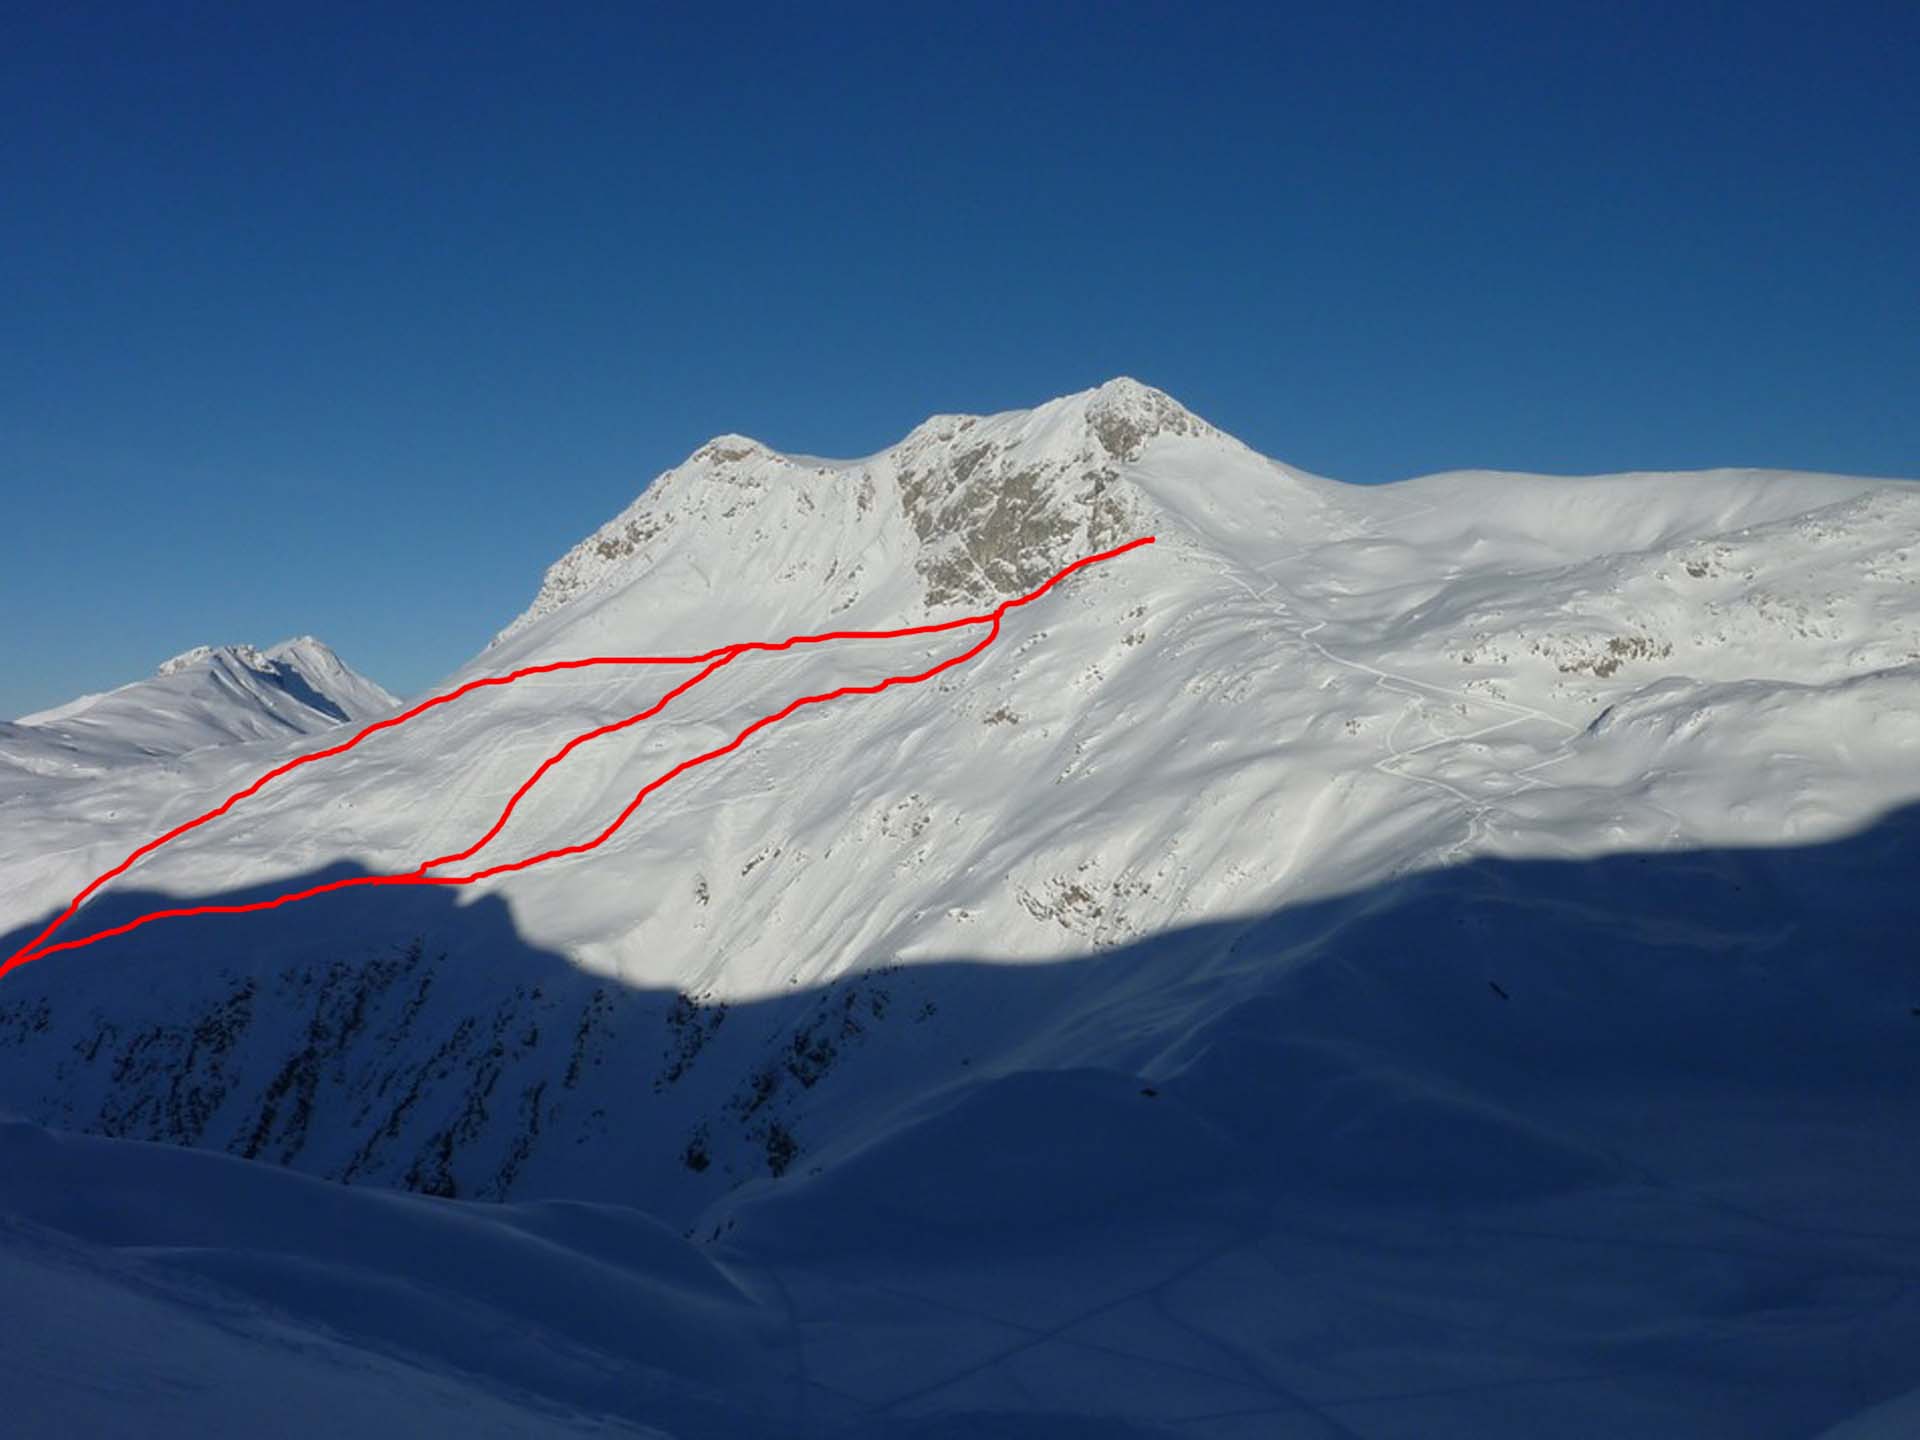 Viele Skivarianten in meist unterschiedlichem Schnee von Pulver bis Firn sind möglich.